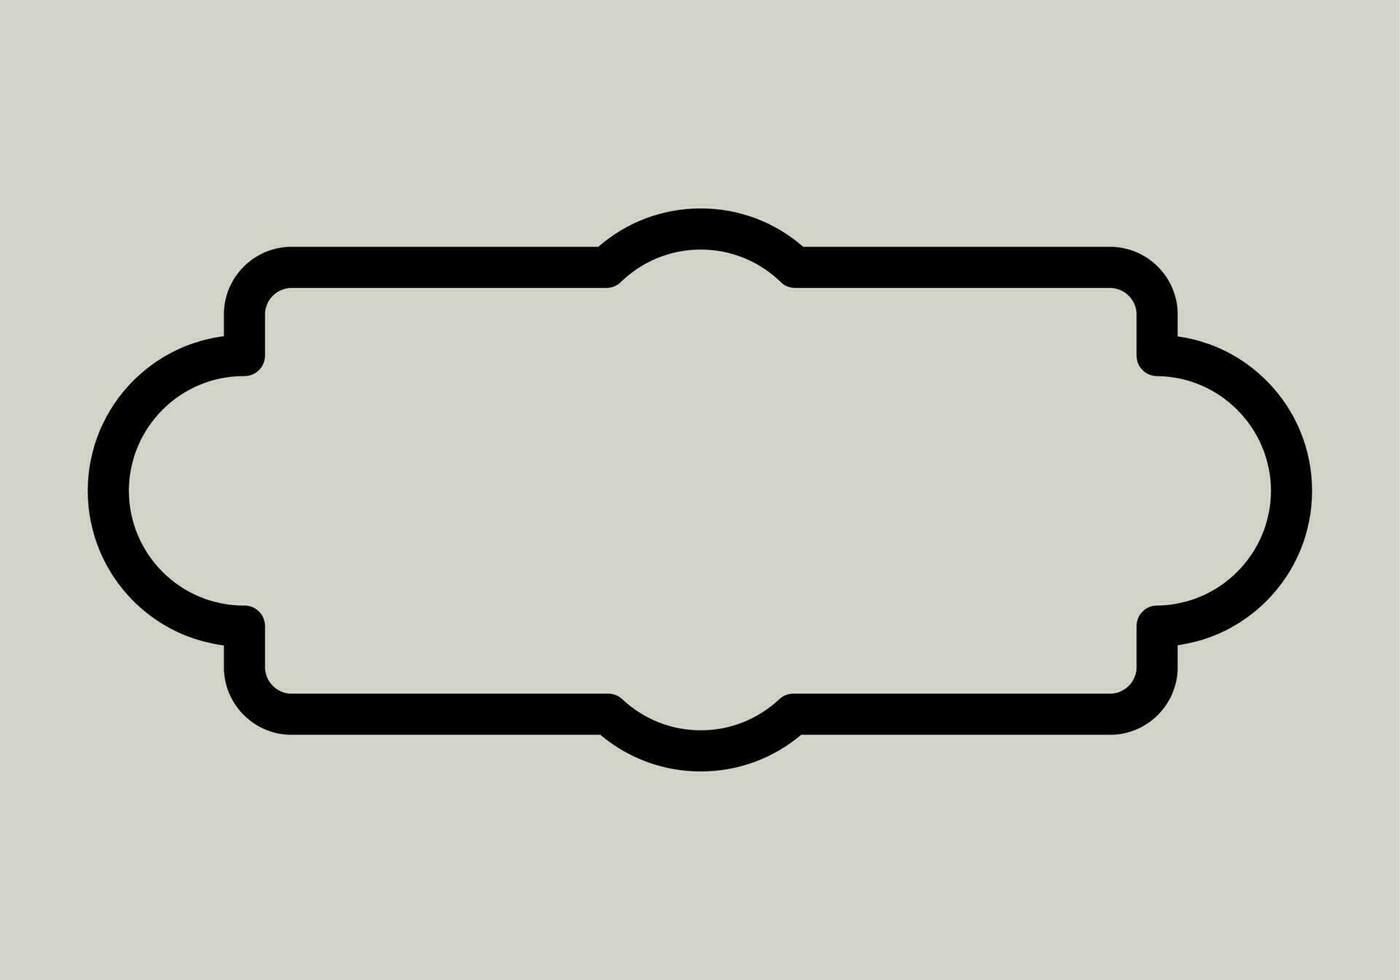 abstrakt svart enkel linje rektangulär ram klotter översikt element vektor design stil skiss isolerat illustration för bröllop och baner